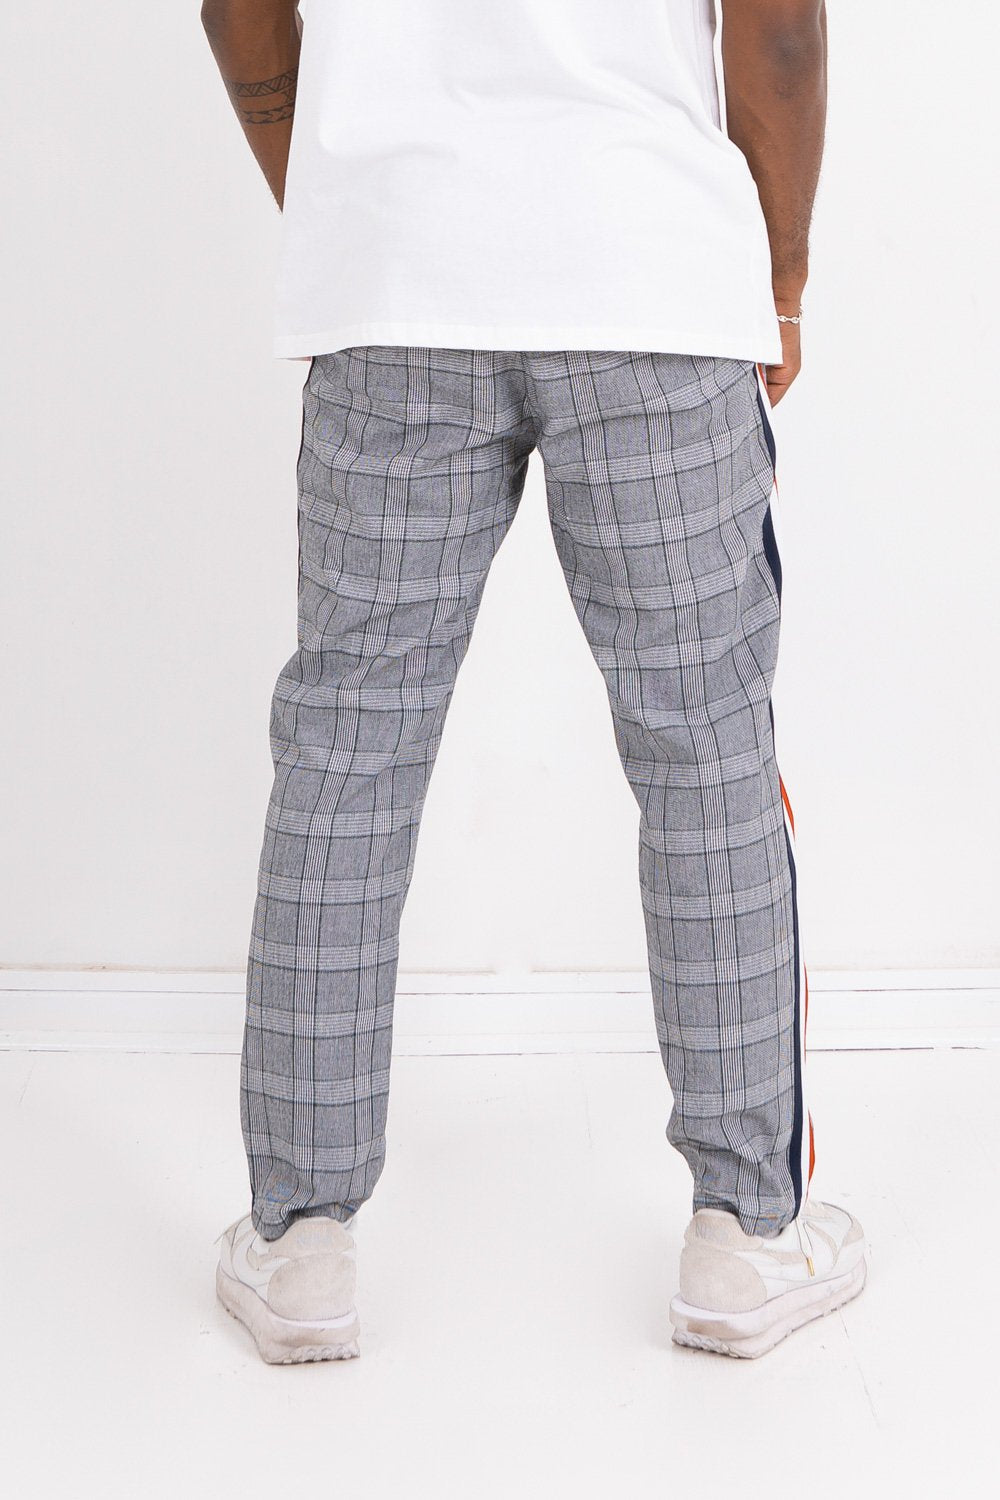 Pantalon Prince de Galles bande tricolore gris